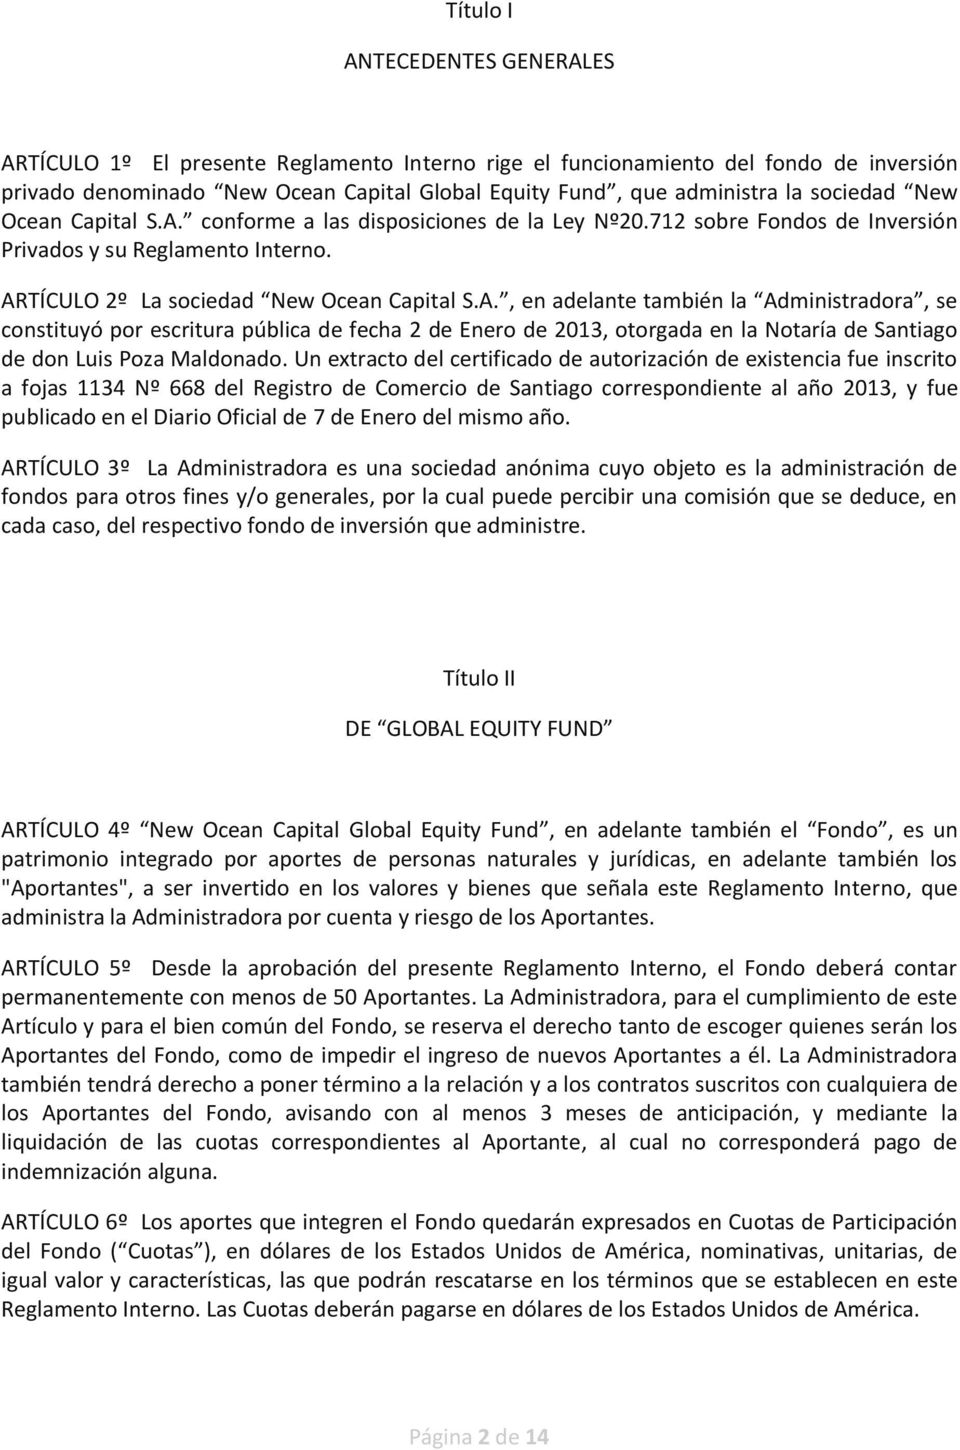 Un extracto del certificado de autorización de existencia fue inscrito a fojas 1134 Nº 668 del Registro de Comercio de Santiago correspondiente al año 2013, y fue publicado en el Diario Oficial de 7